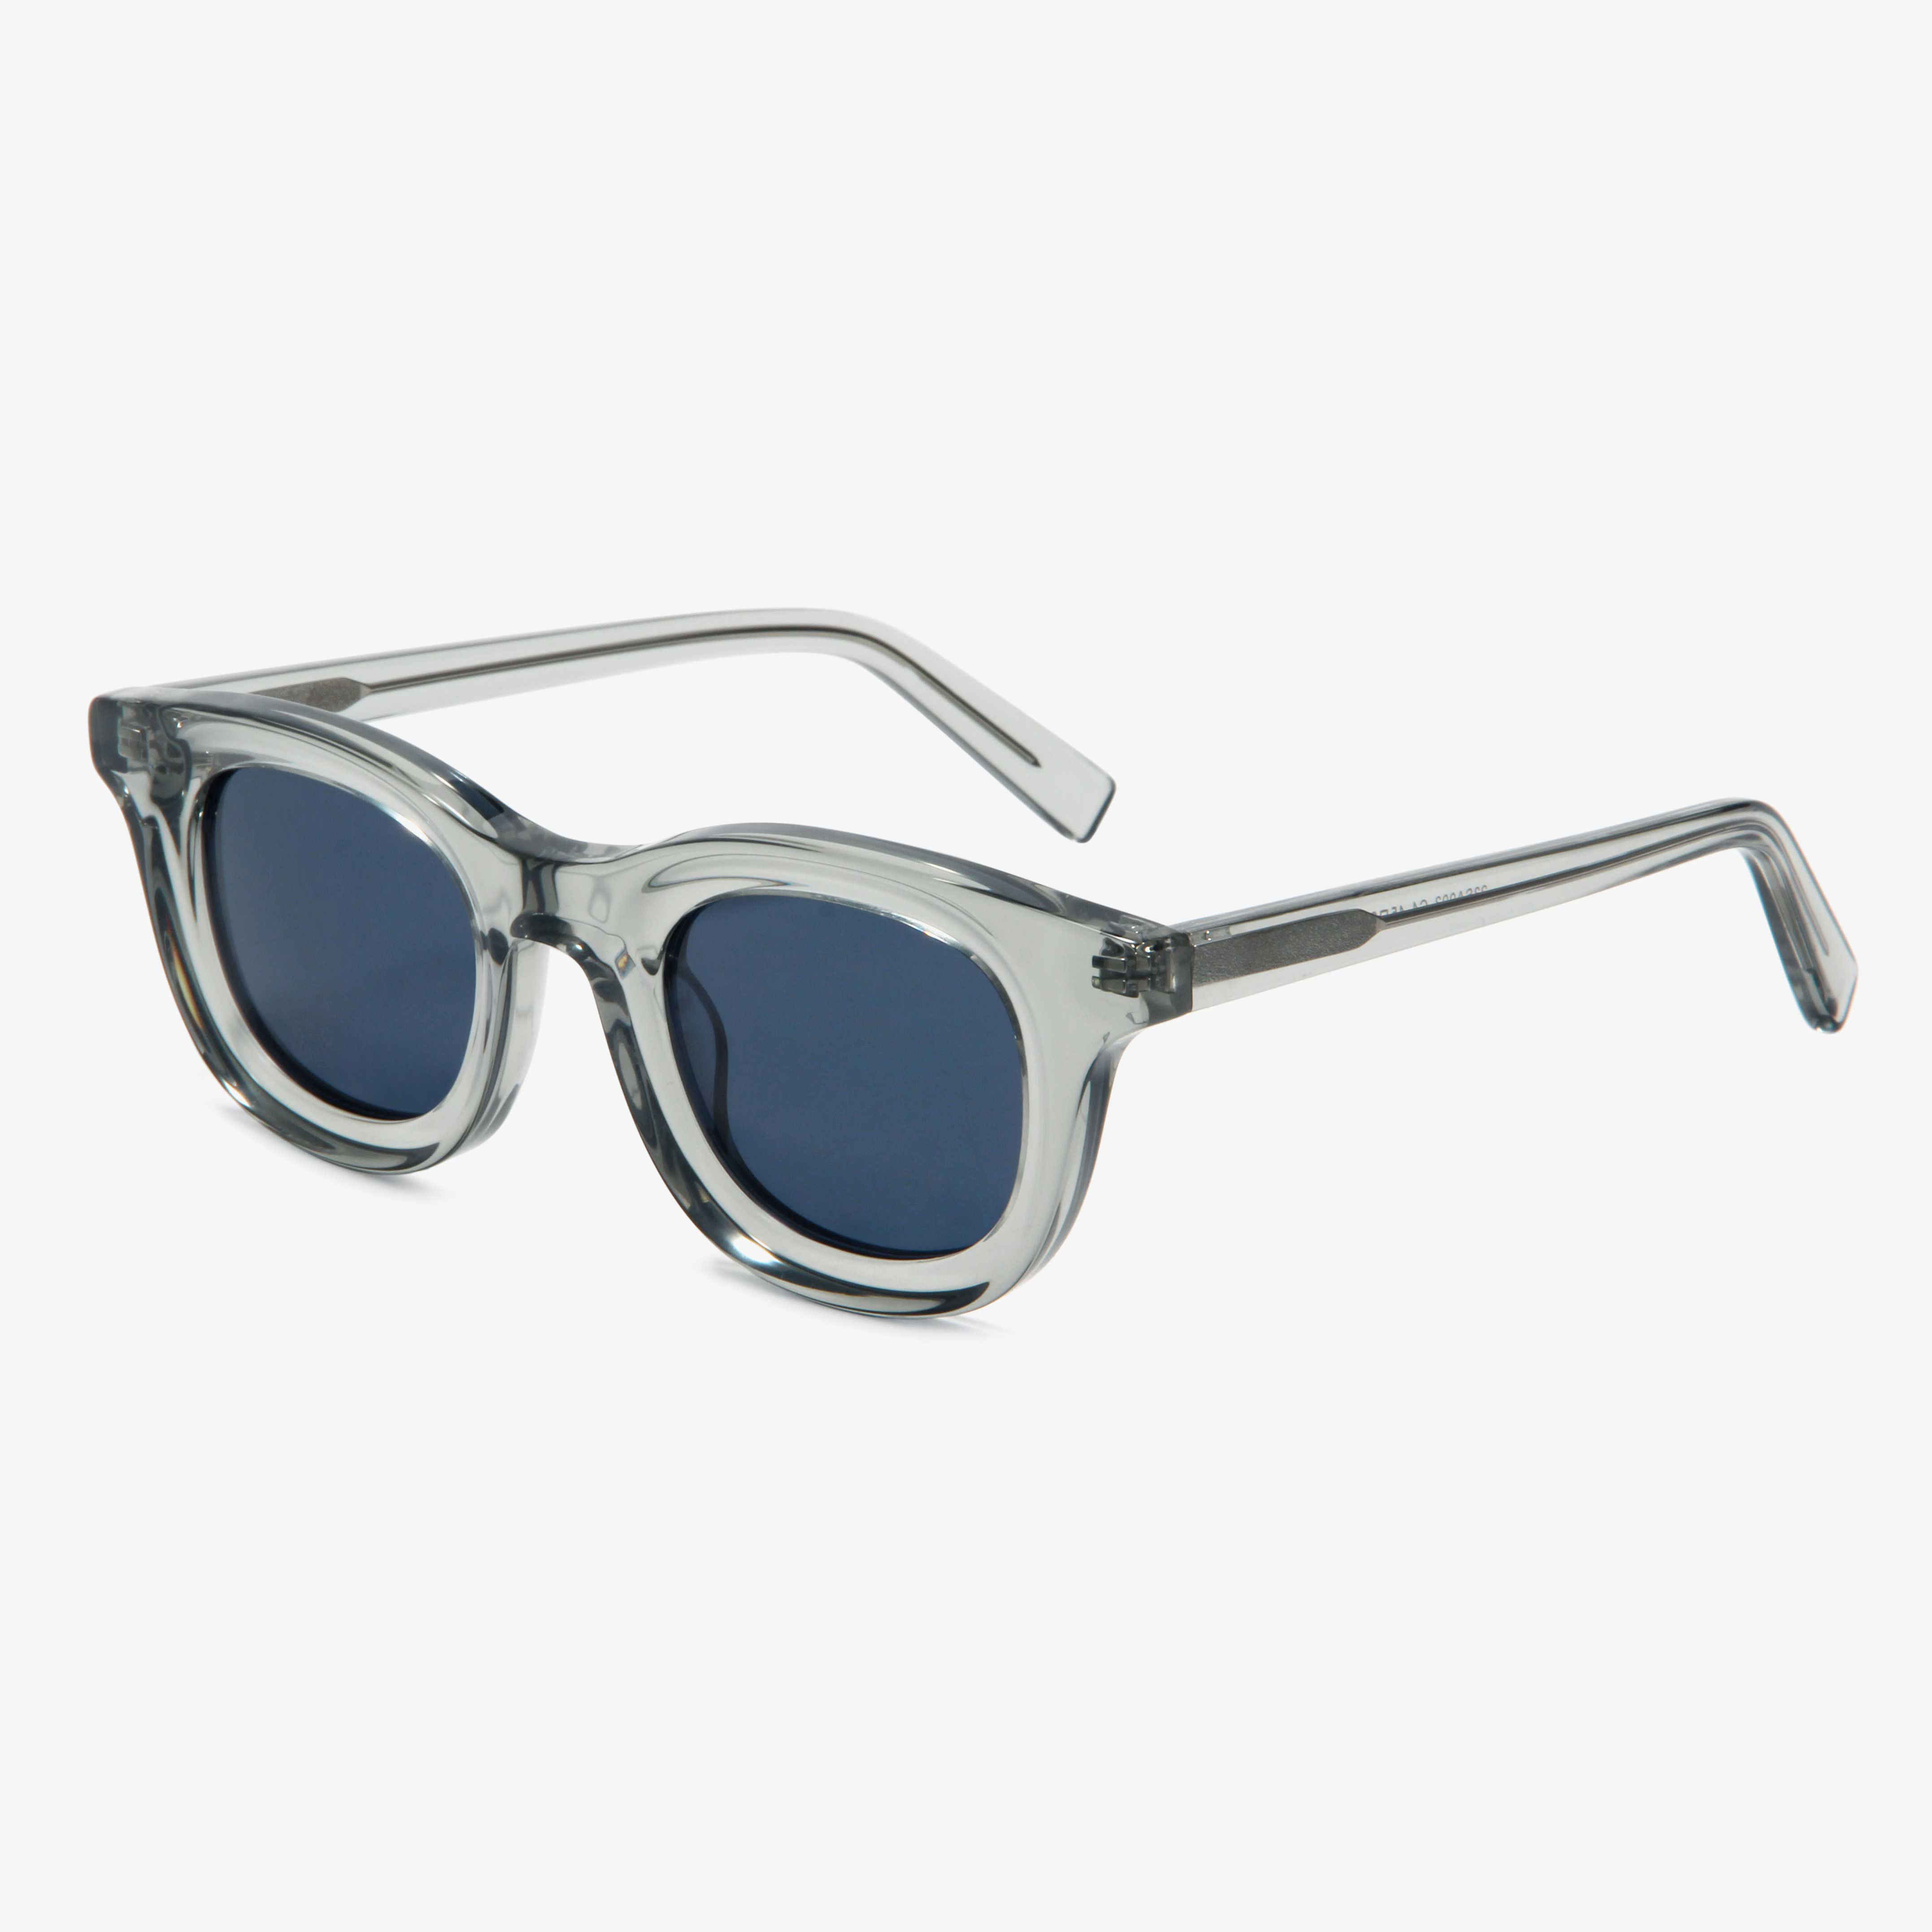 Sunglasses Acetate Colorful Frame 23SA003